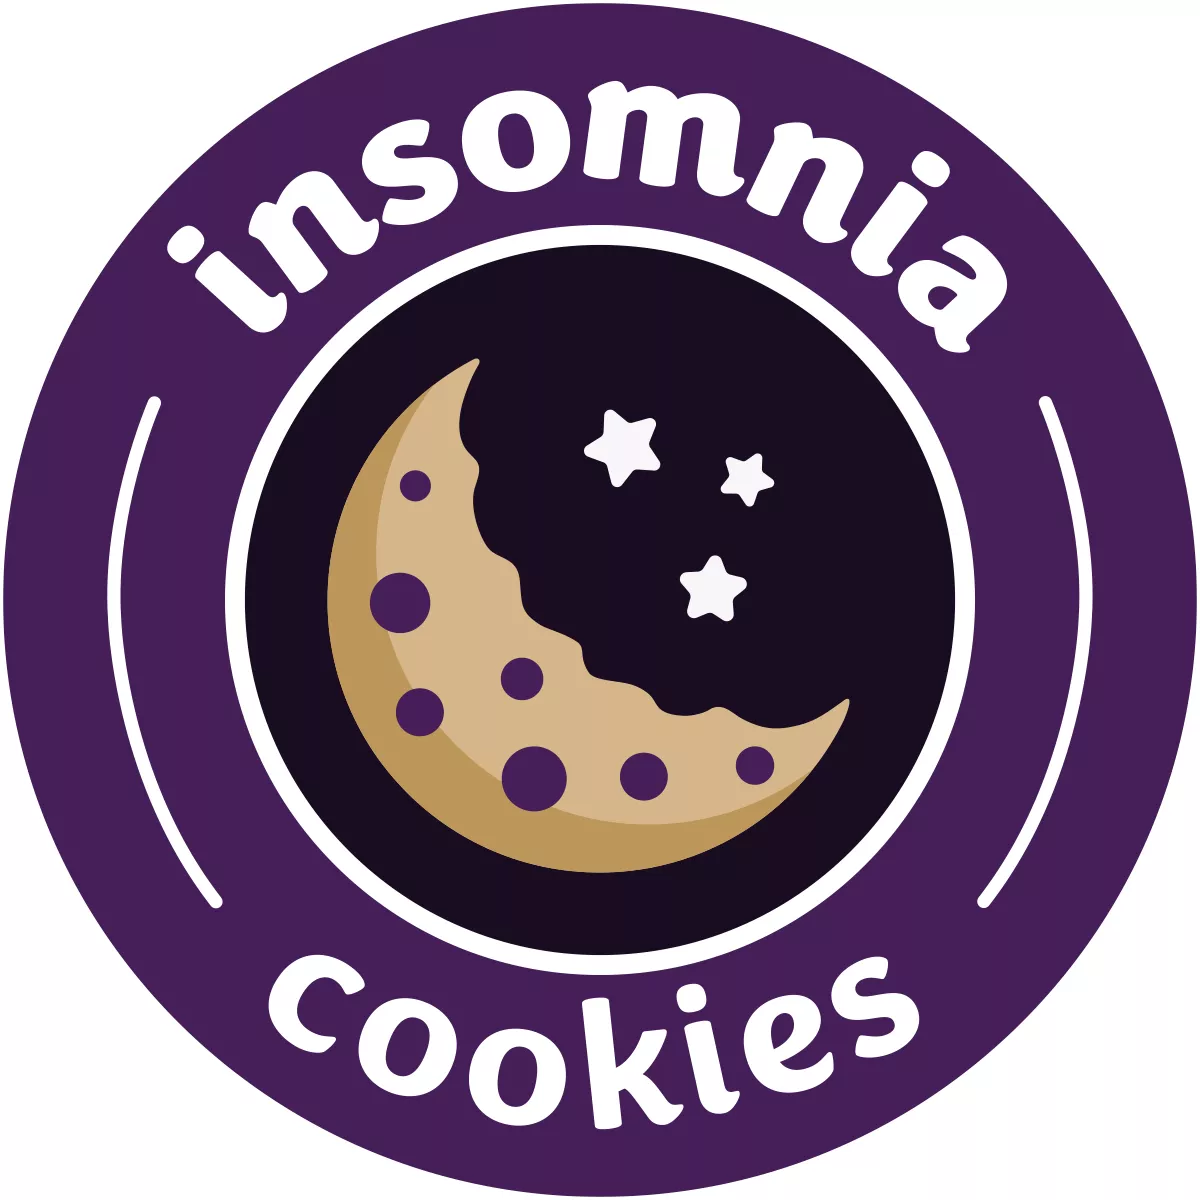 Insomnia Cookies- Bala Cynwyd Bala Cynwyd